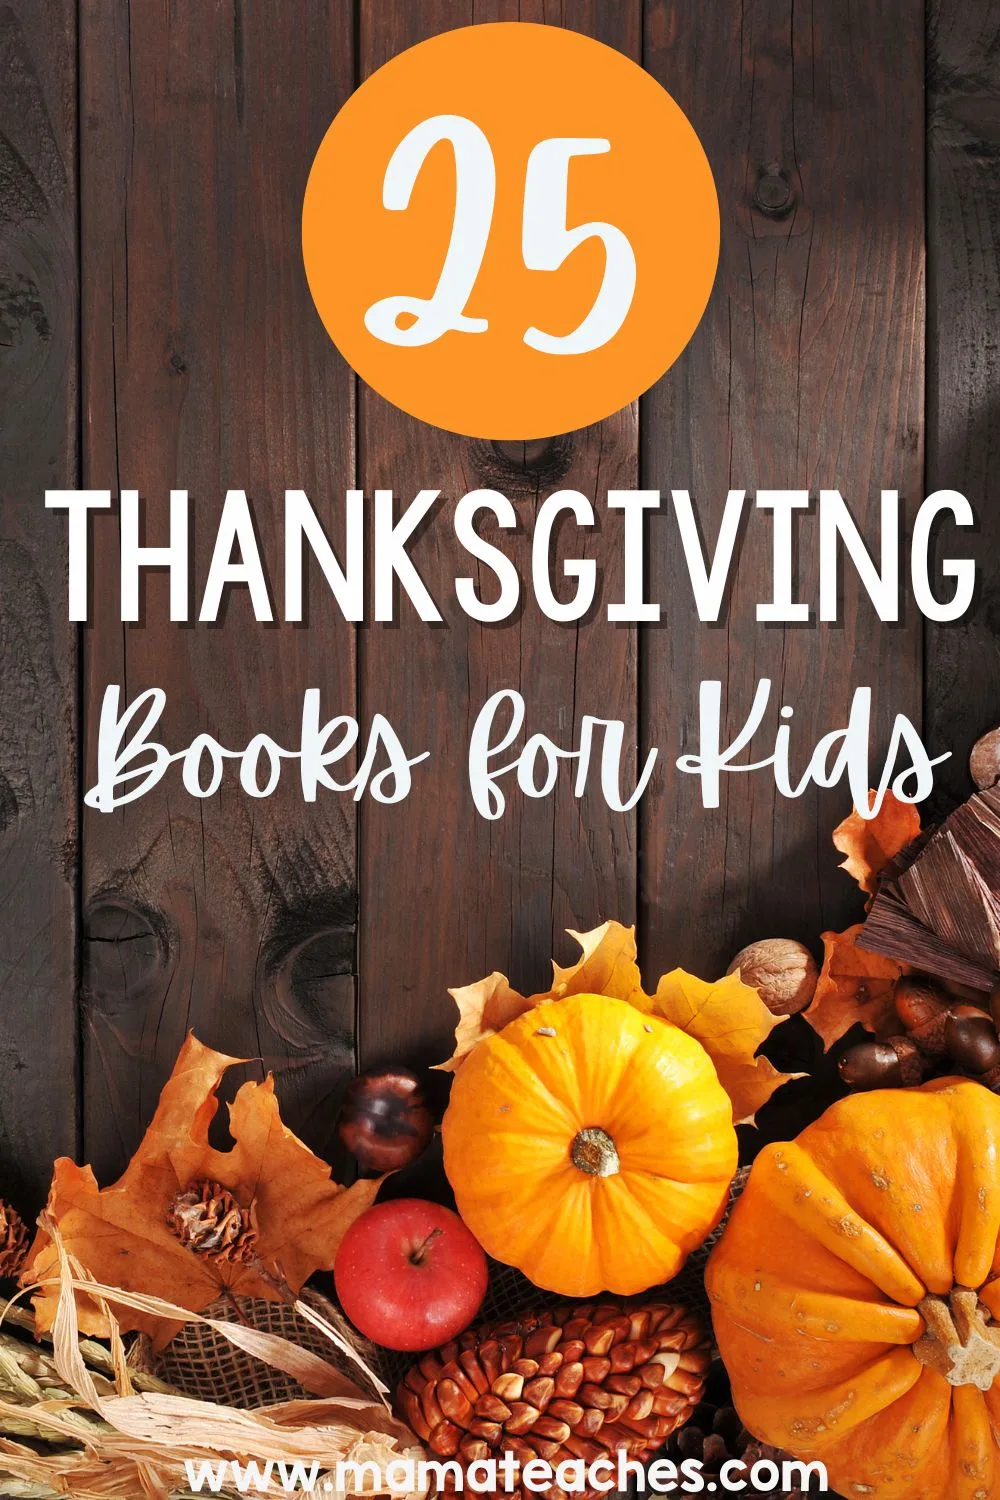 25 Thanksgiving Books for Kids